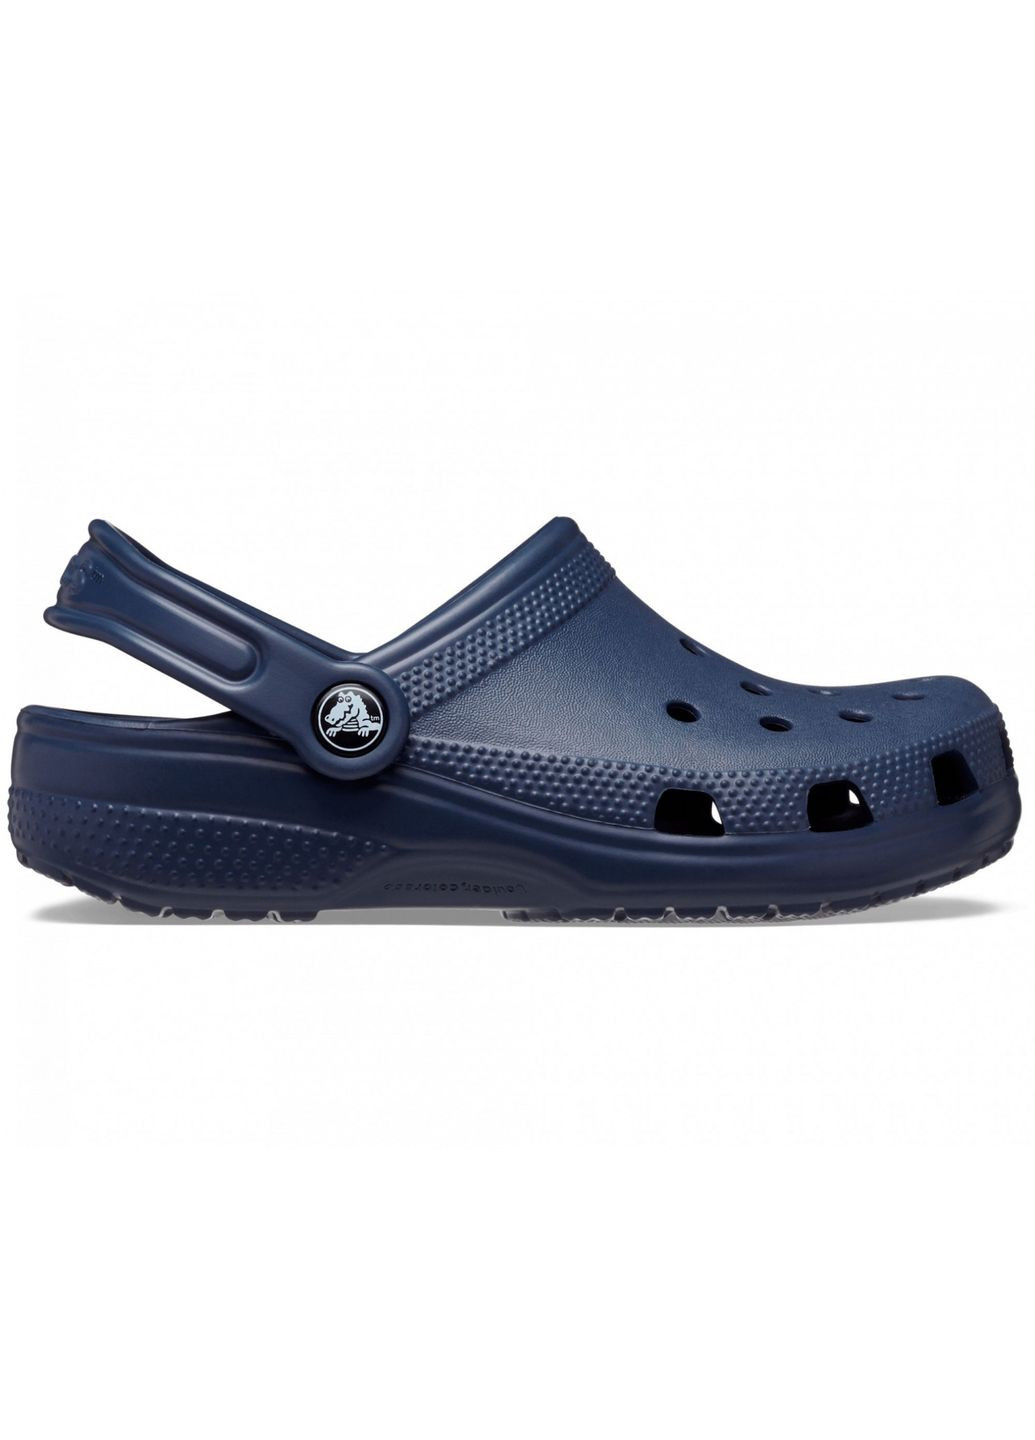 Синие сабо kids classic clog navy j1\32\20.5 см 206991 Crocs